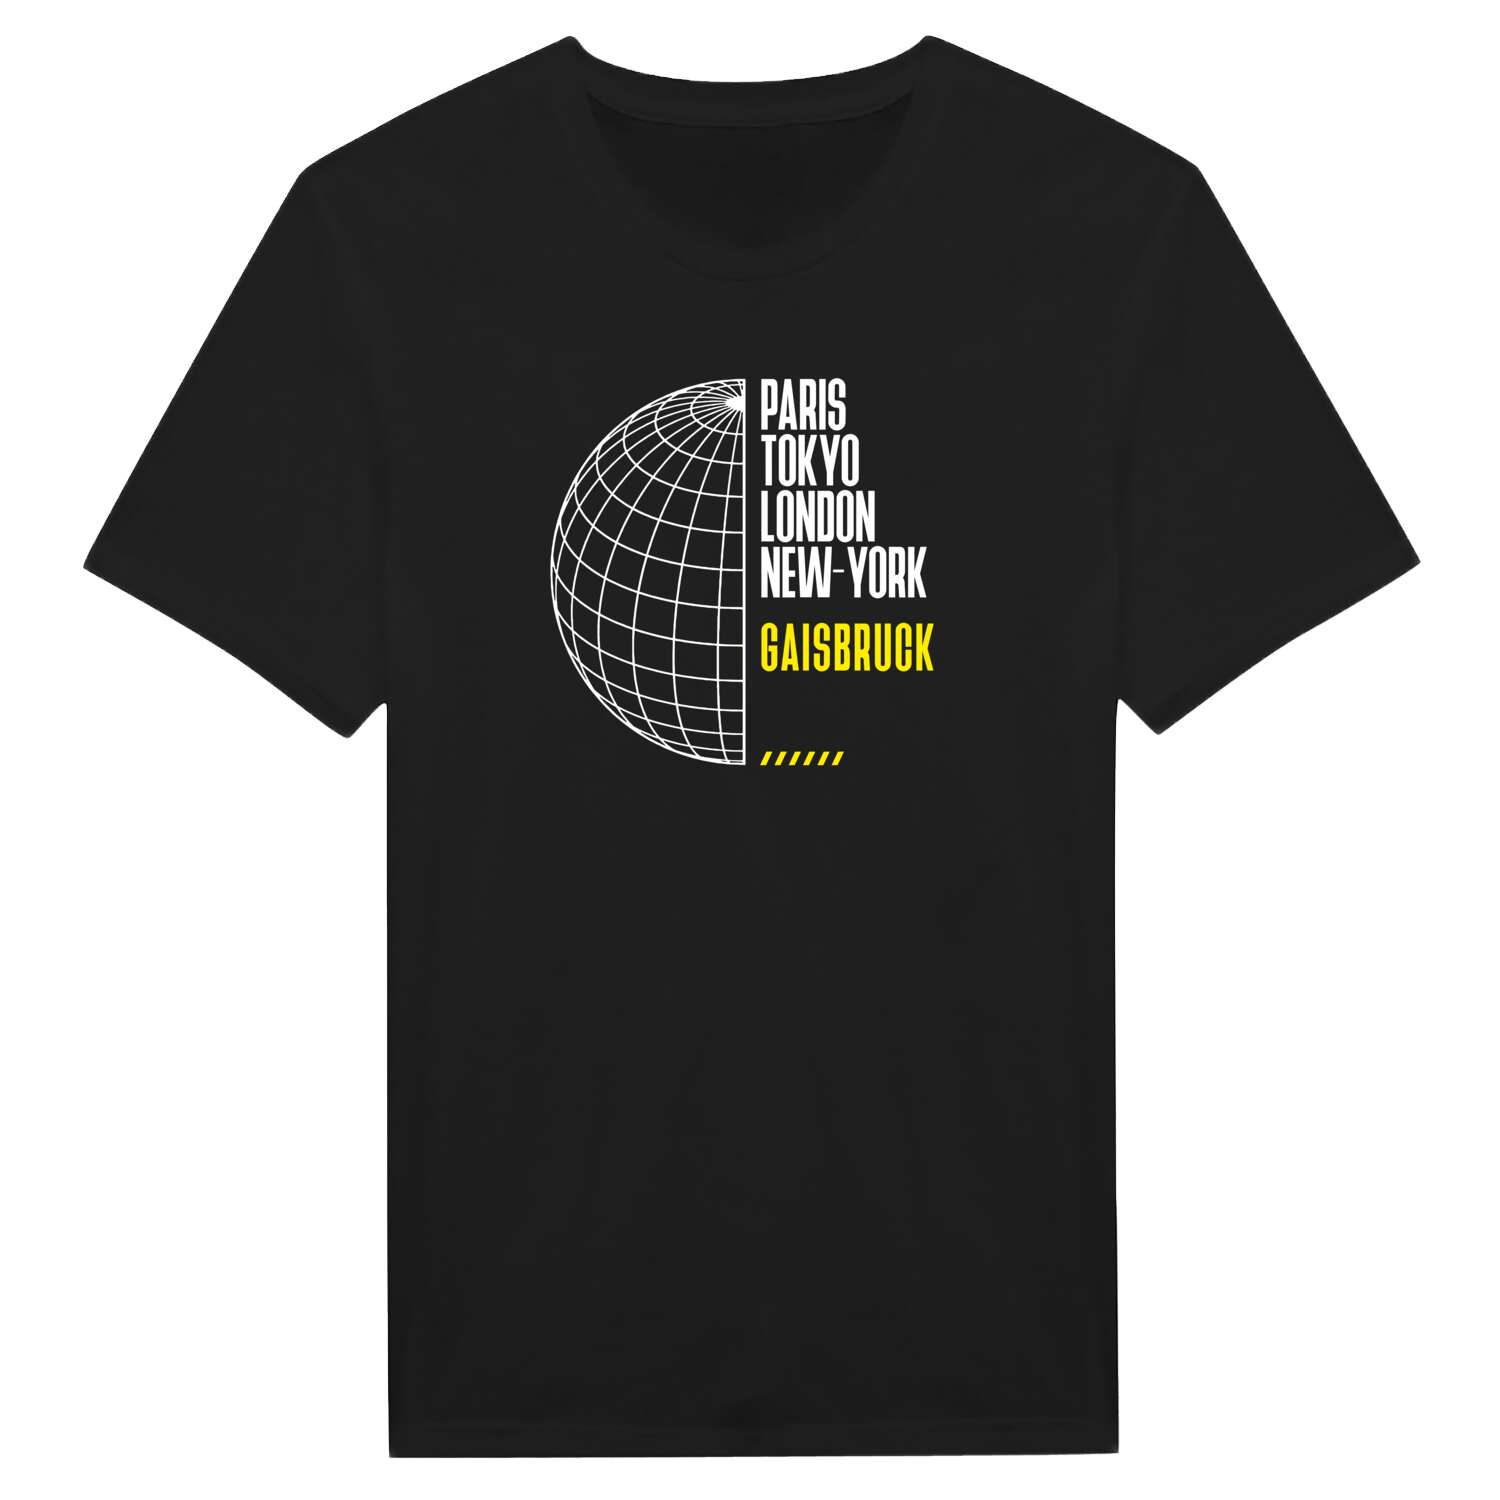 Gaisbruck T-Shirt »Paris Tokyo London«